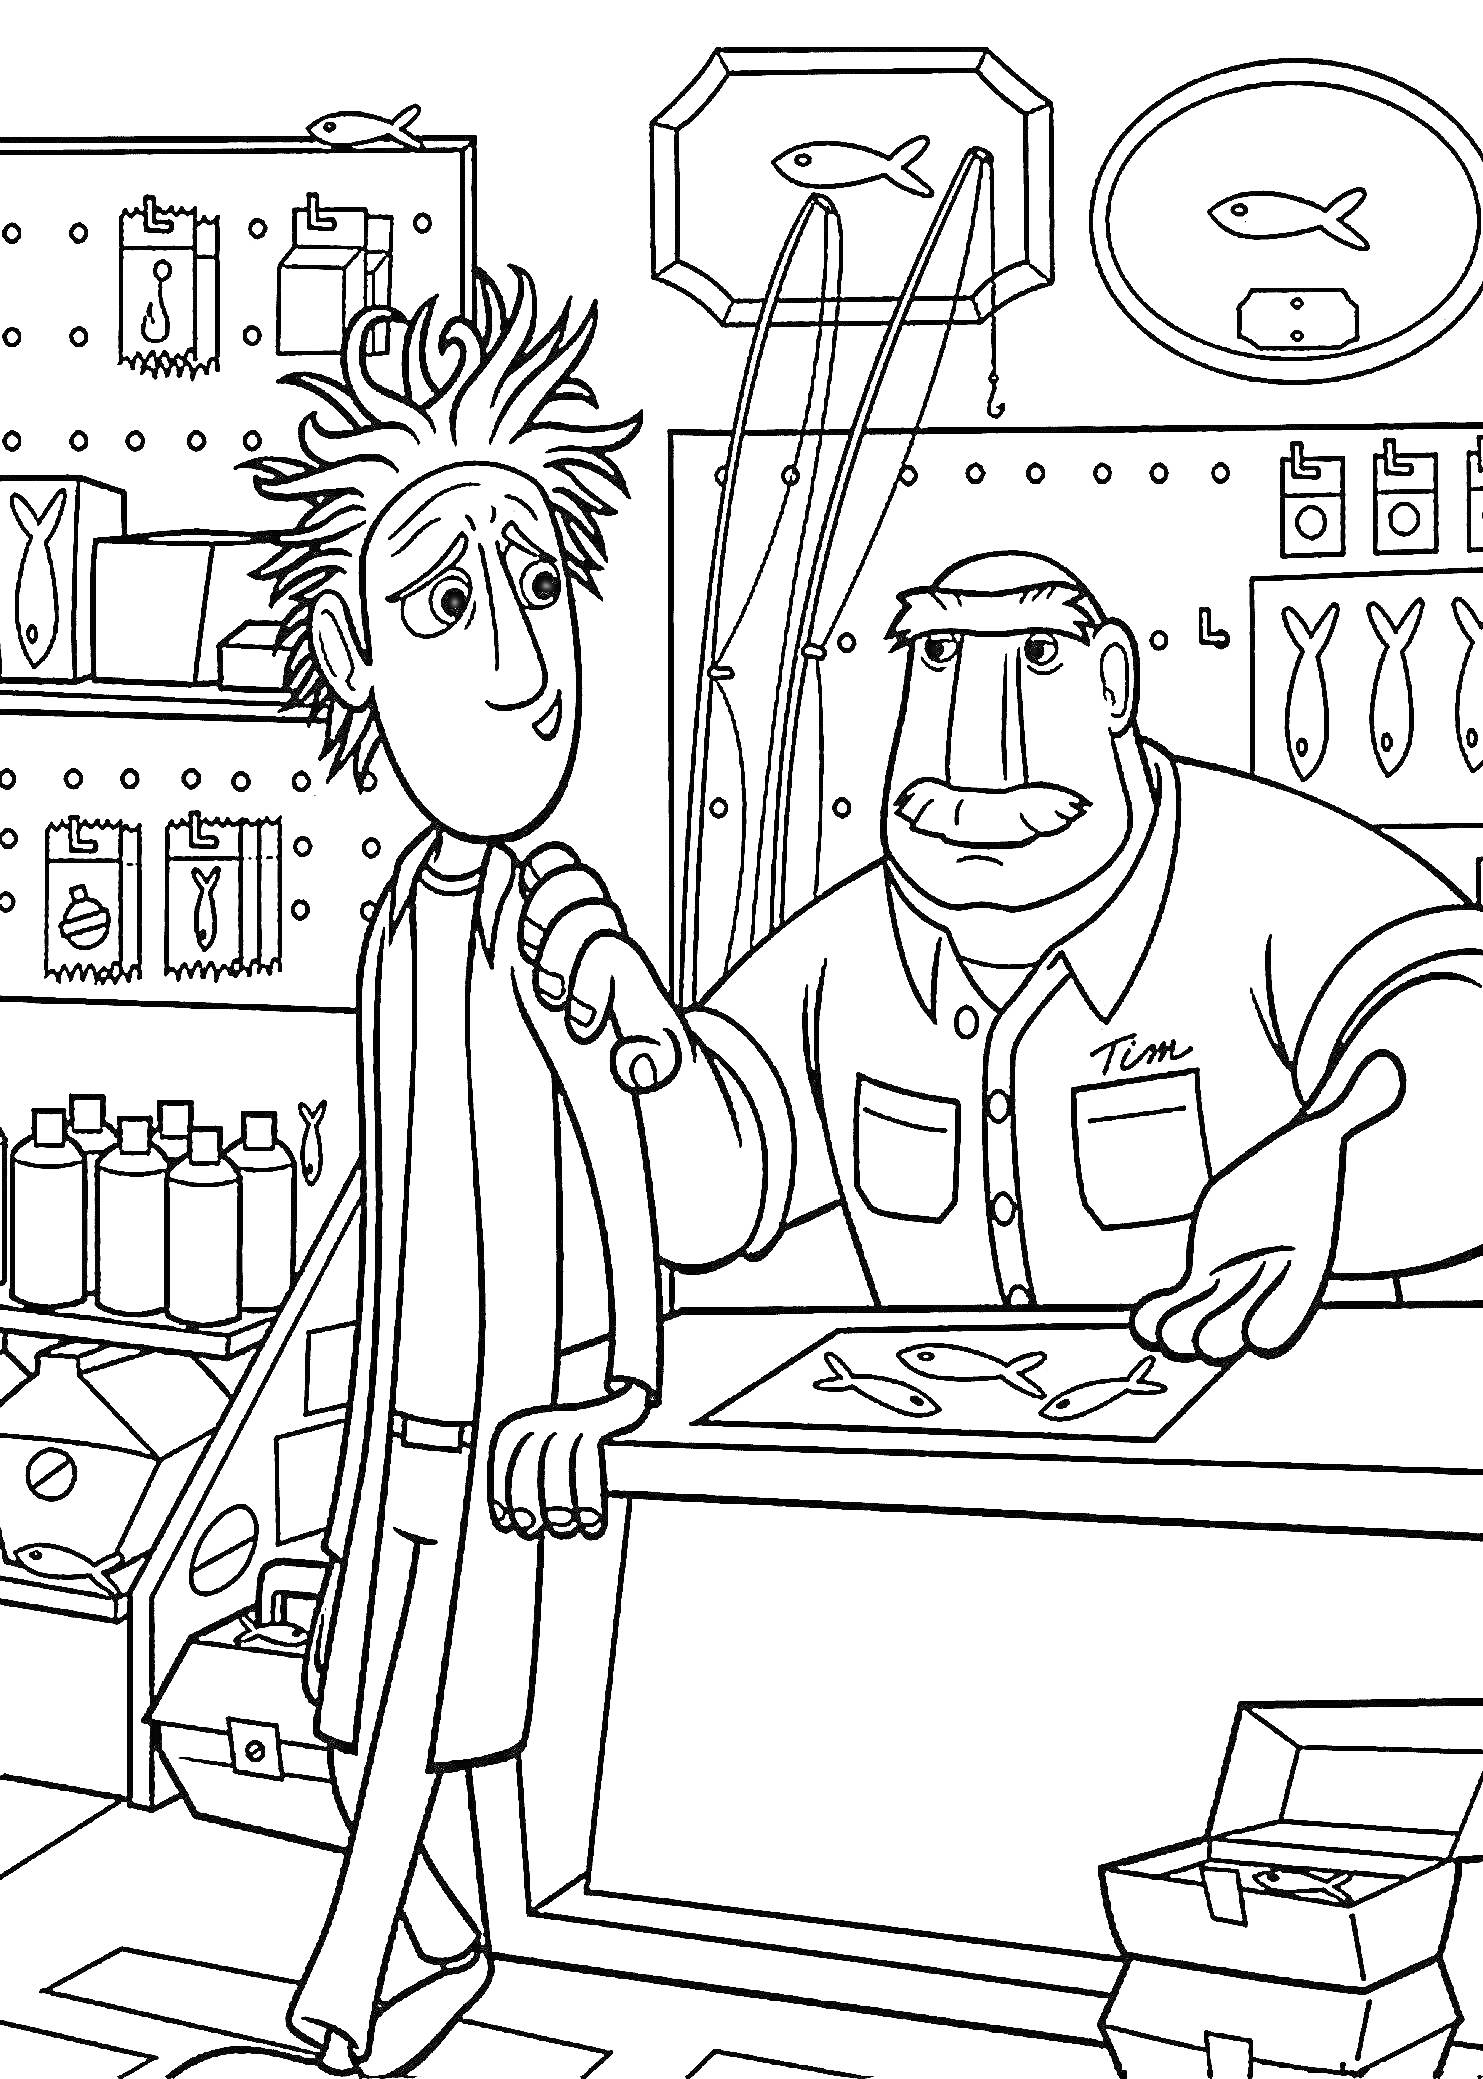 Раскраска В магазине рыболовных товаров - двое персонажей, полка с аксессуарами, банки на прилавке, рисунок рыбы на стене, коробки на полу